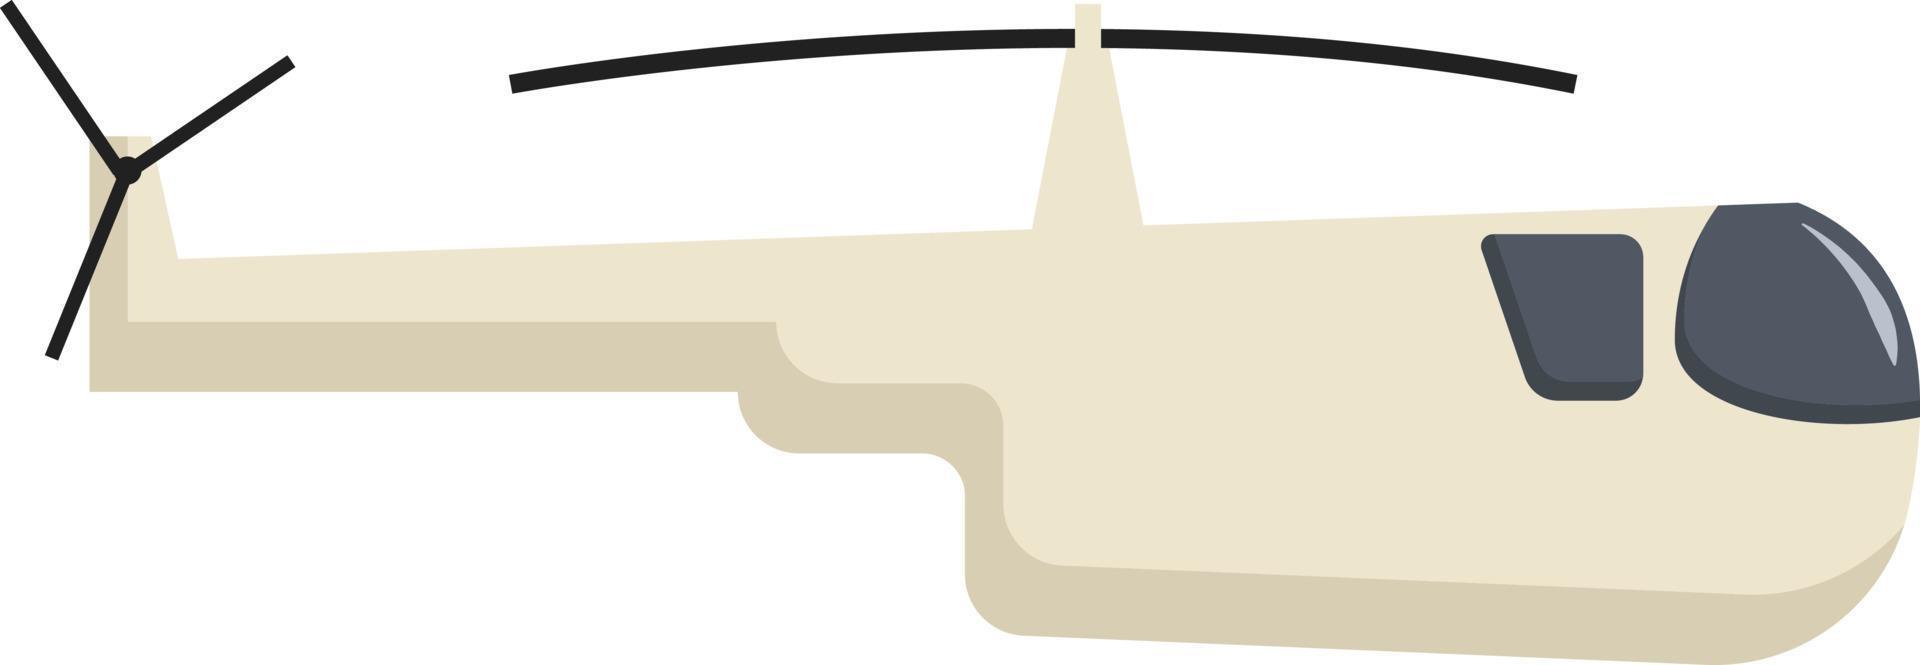 hélicoptère, illustration, vecteur sur fond blanc.